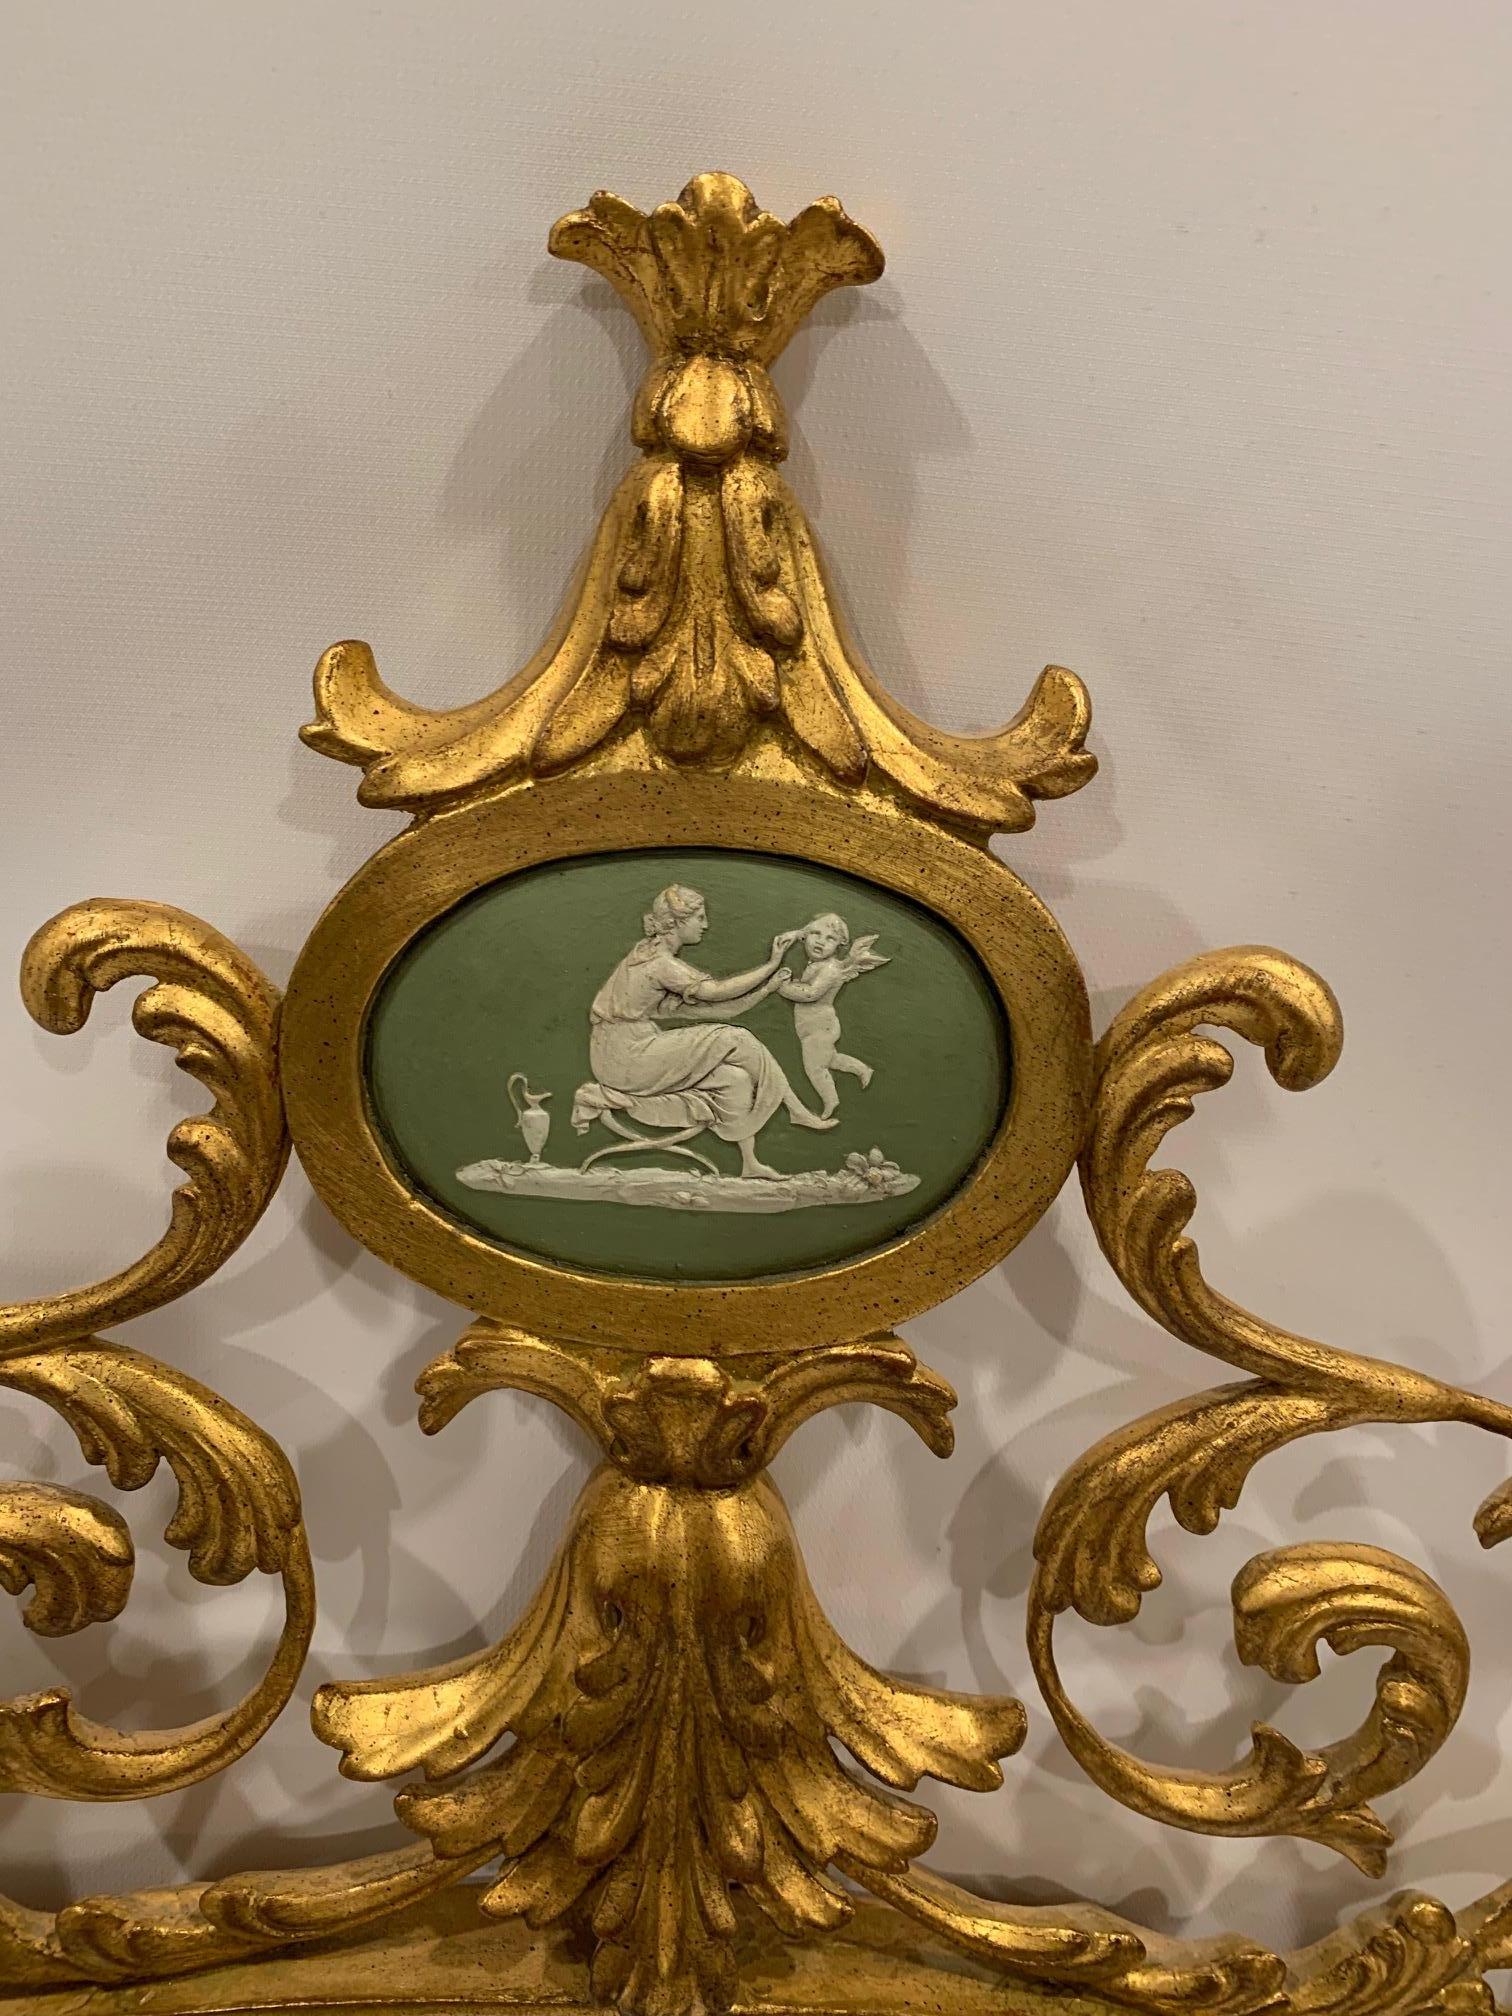 Miroir romantique en bois doré de forme ovale avec des courbes fantaisistes, un miroir biseauté et un magnifique médaillon en camée vert et crème de Wedgewood dans la partie supérieure. Le miroir mesure 26,5 x 16,75.